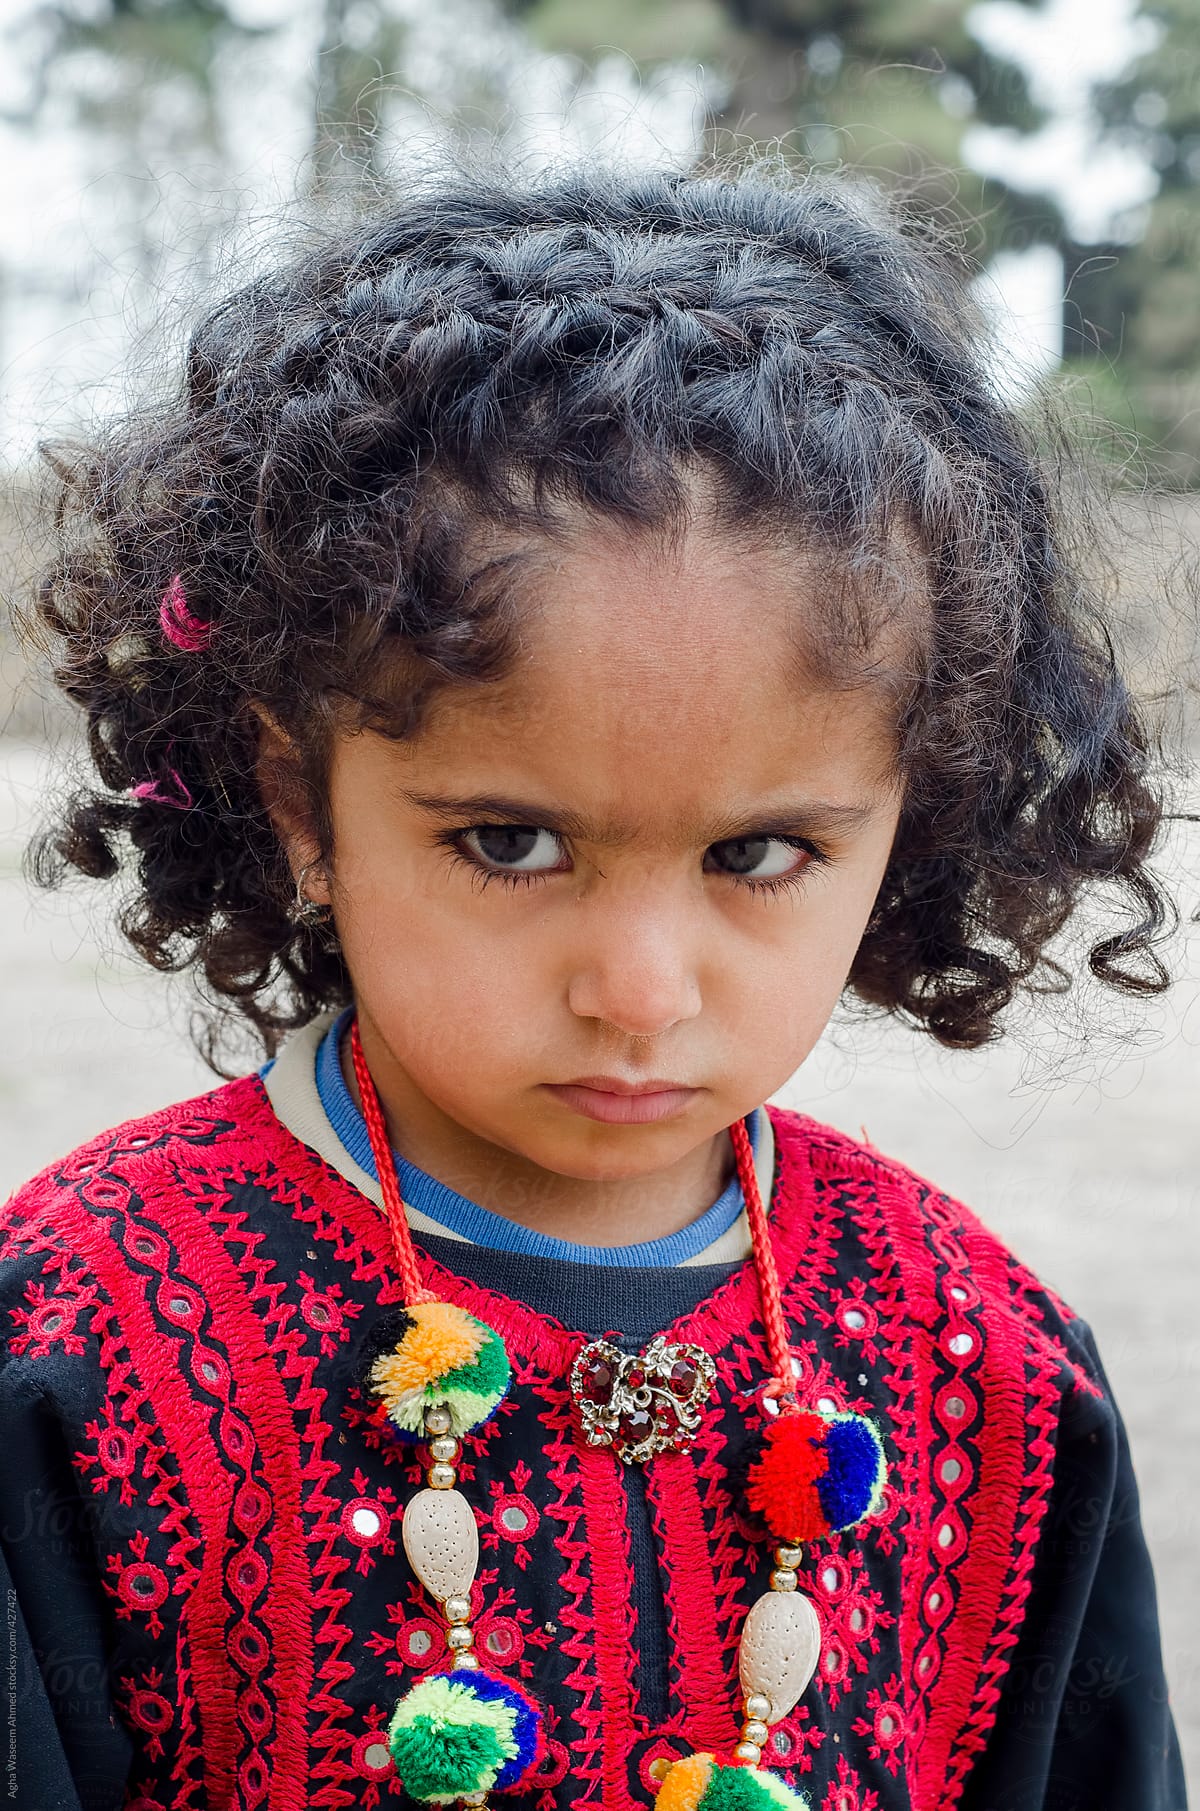 A Balochi Girl Child by Agha Waseem Ahmed